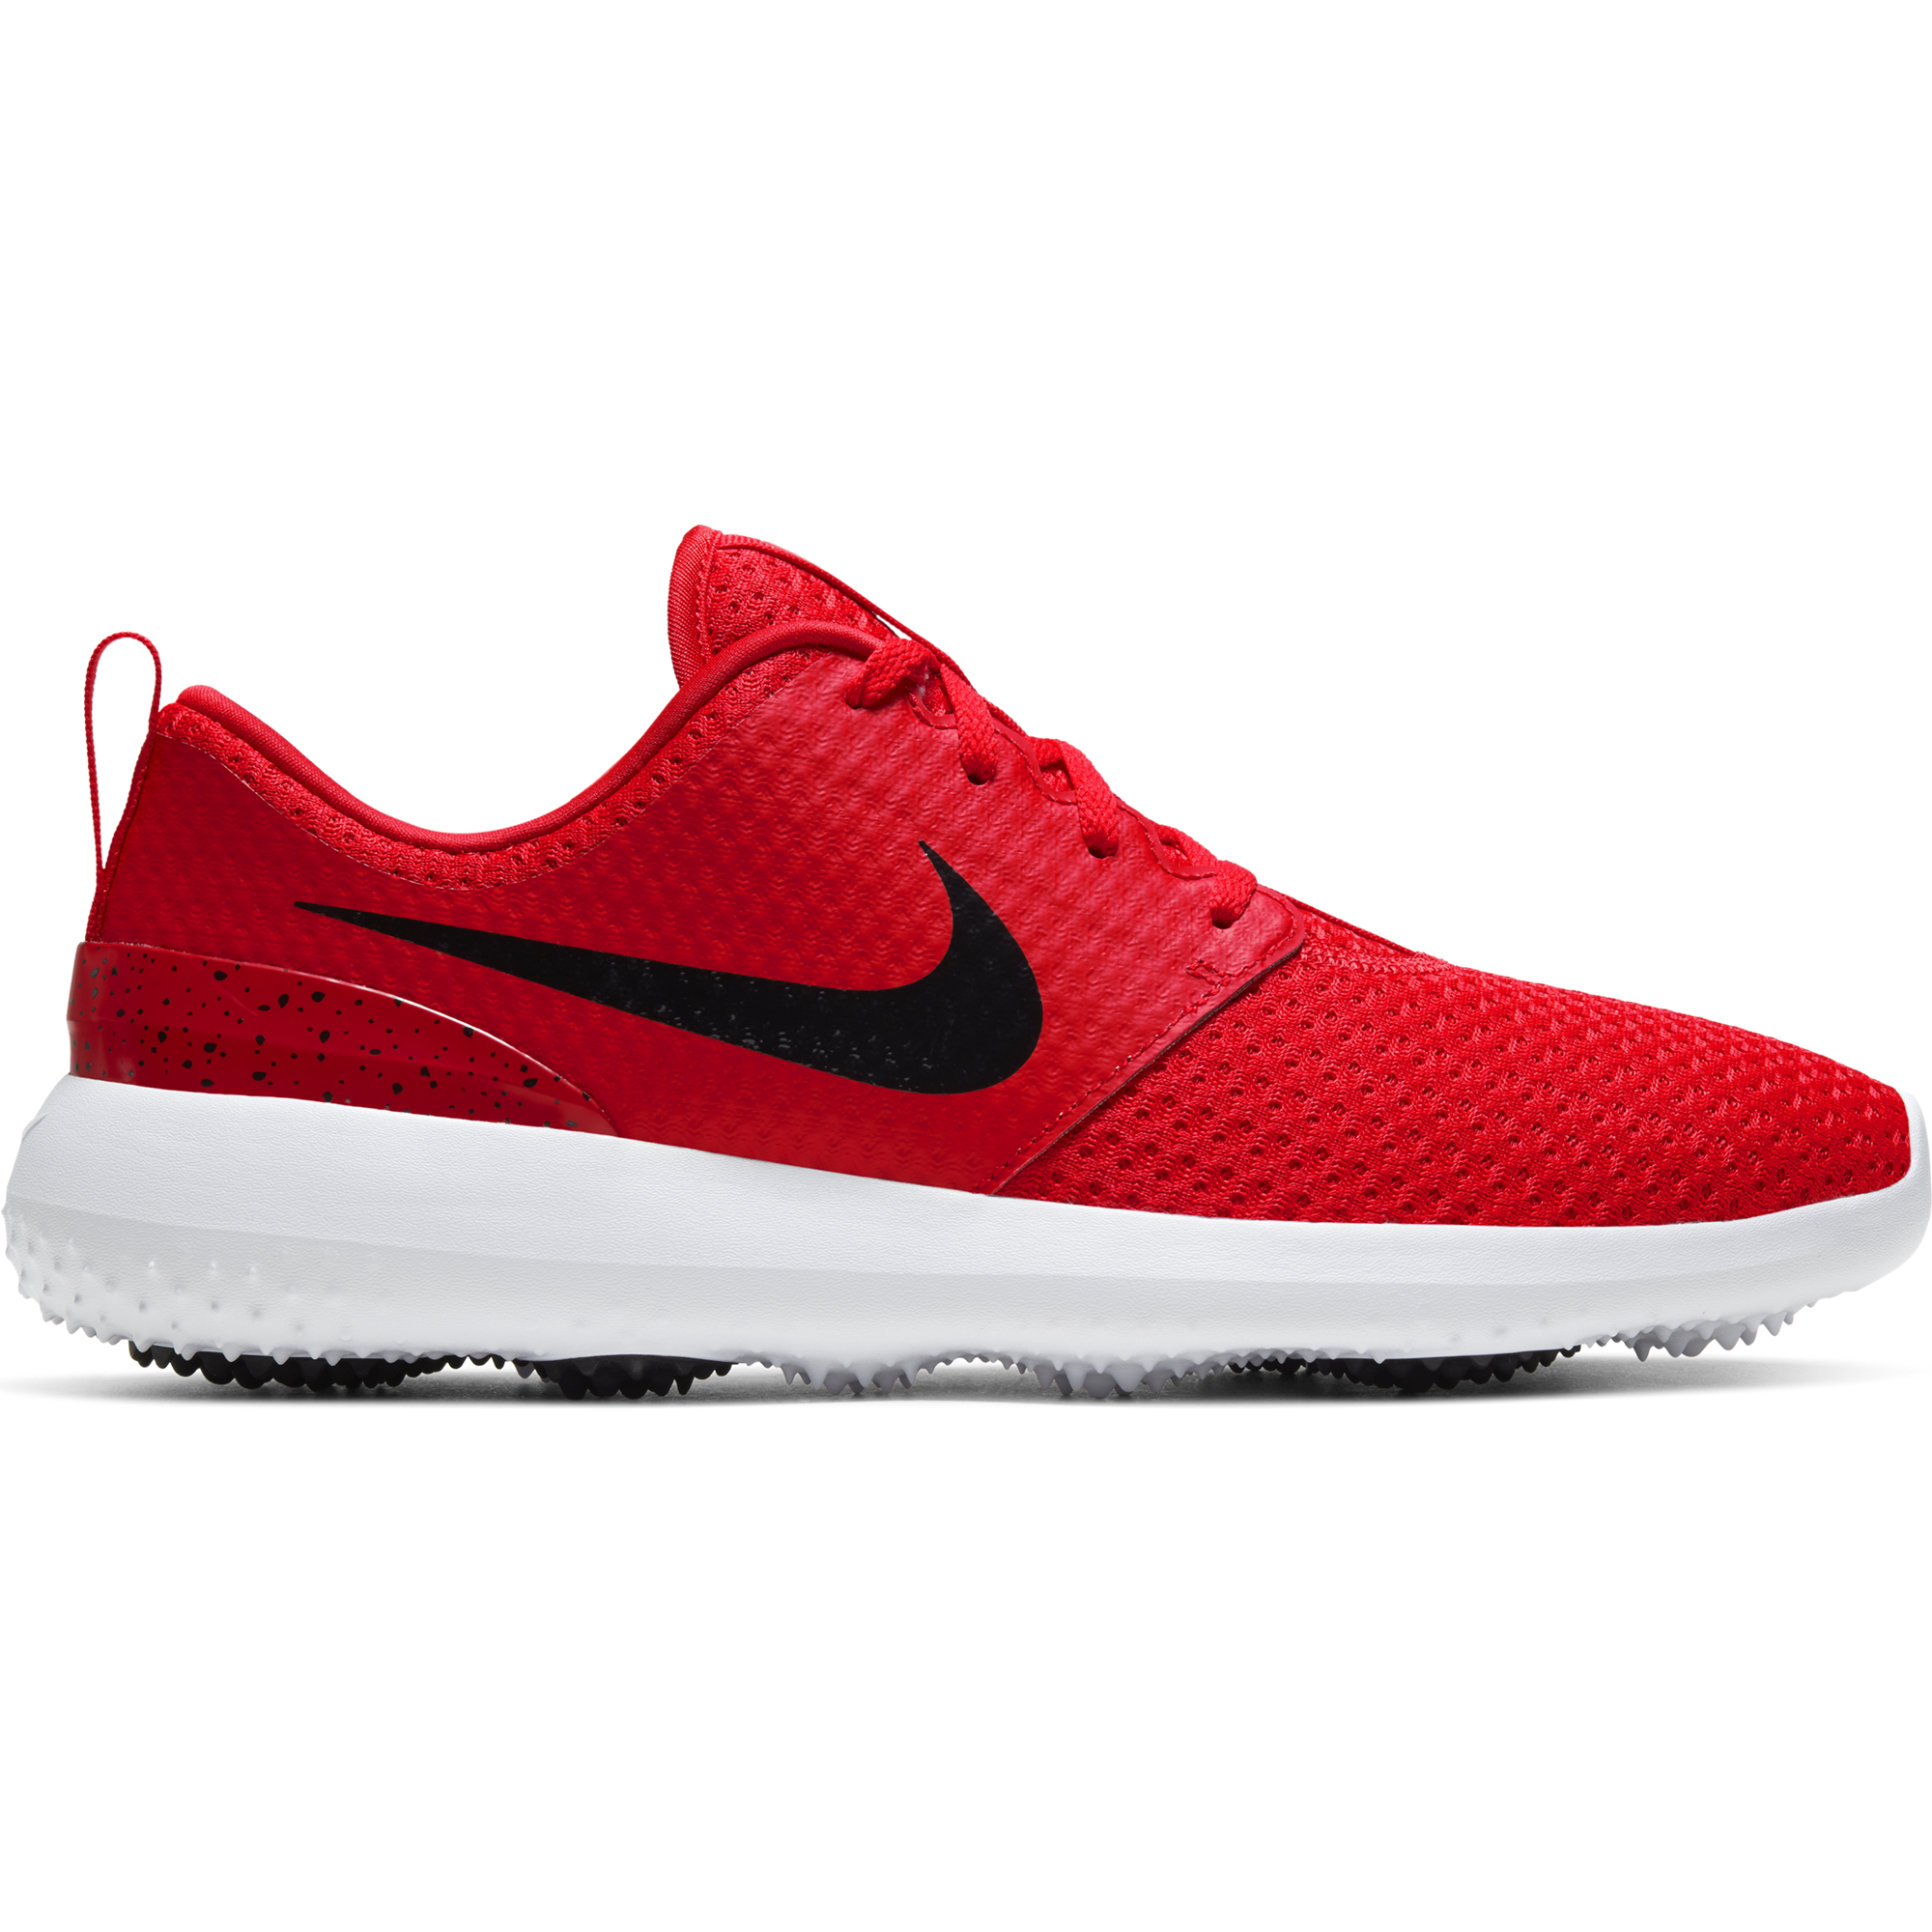 Nike Roshe G Men's Golf Shoe - Red 